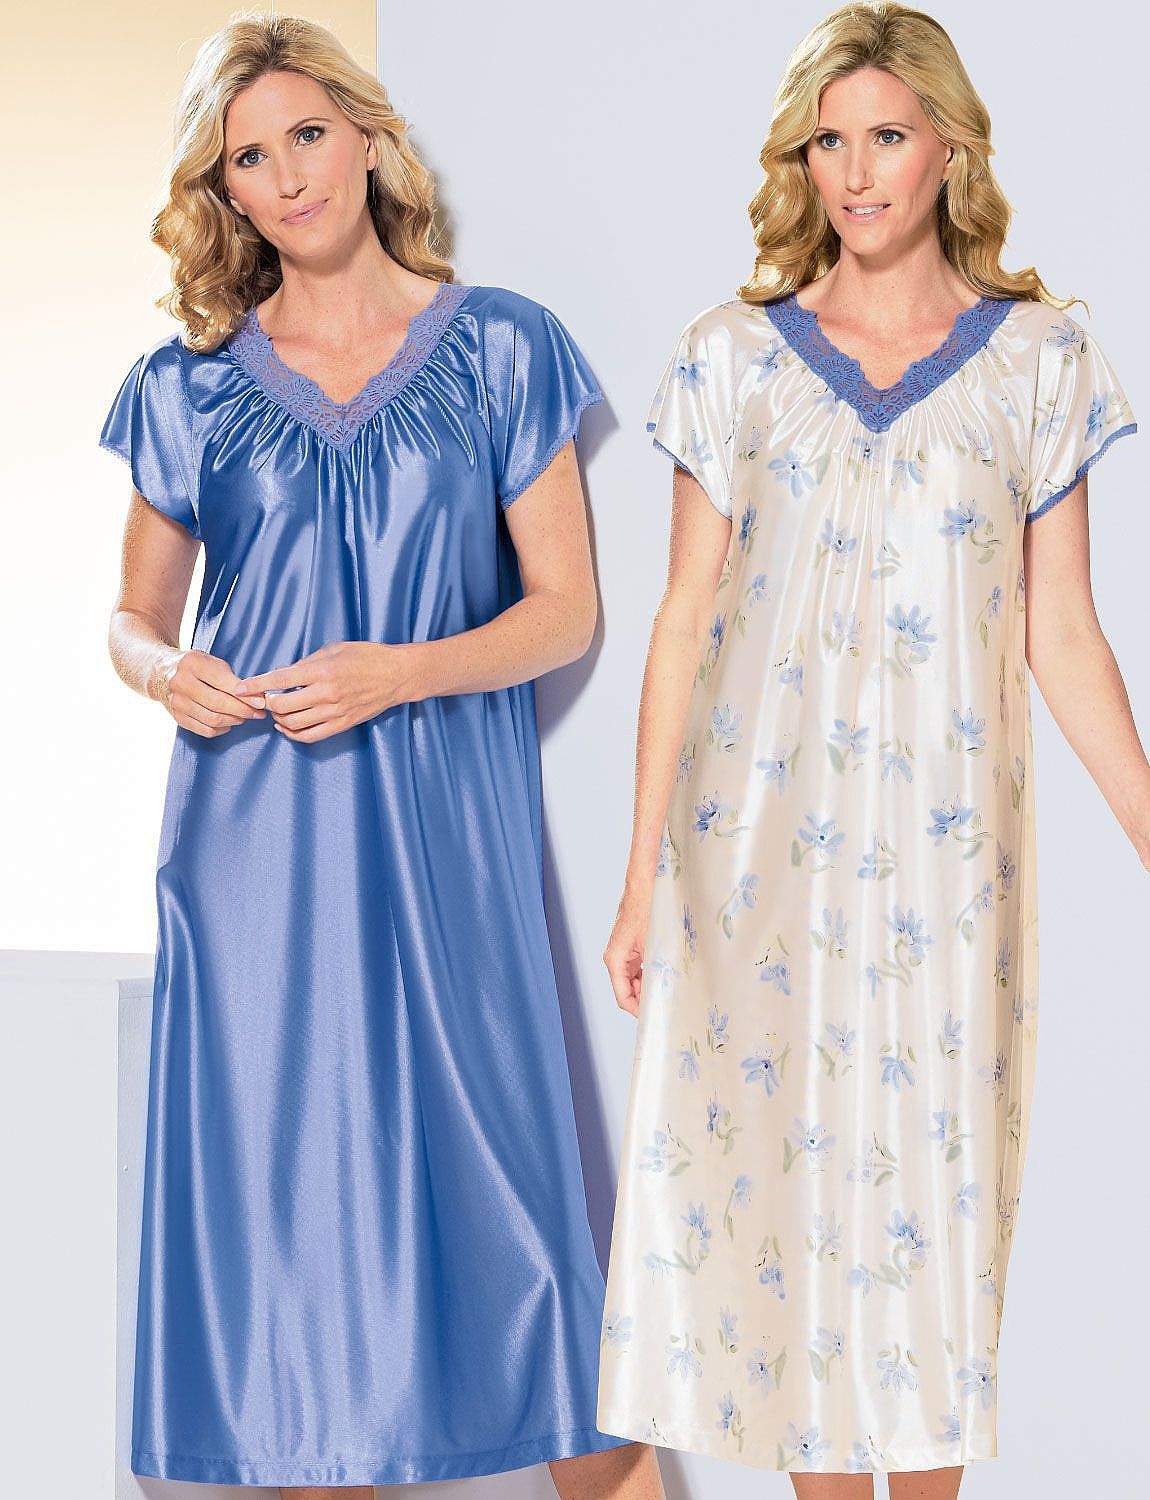 Pack Of 2 Short Sleeve Nightdresses - Ladieswear Nightwear